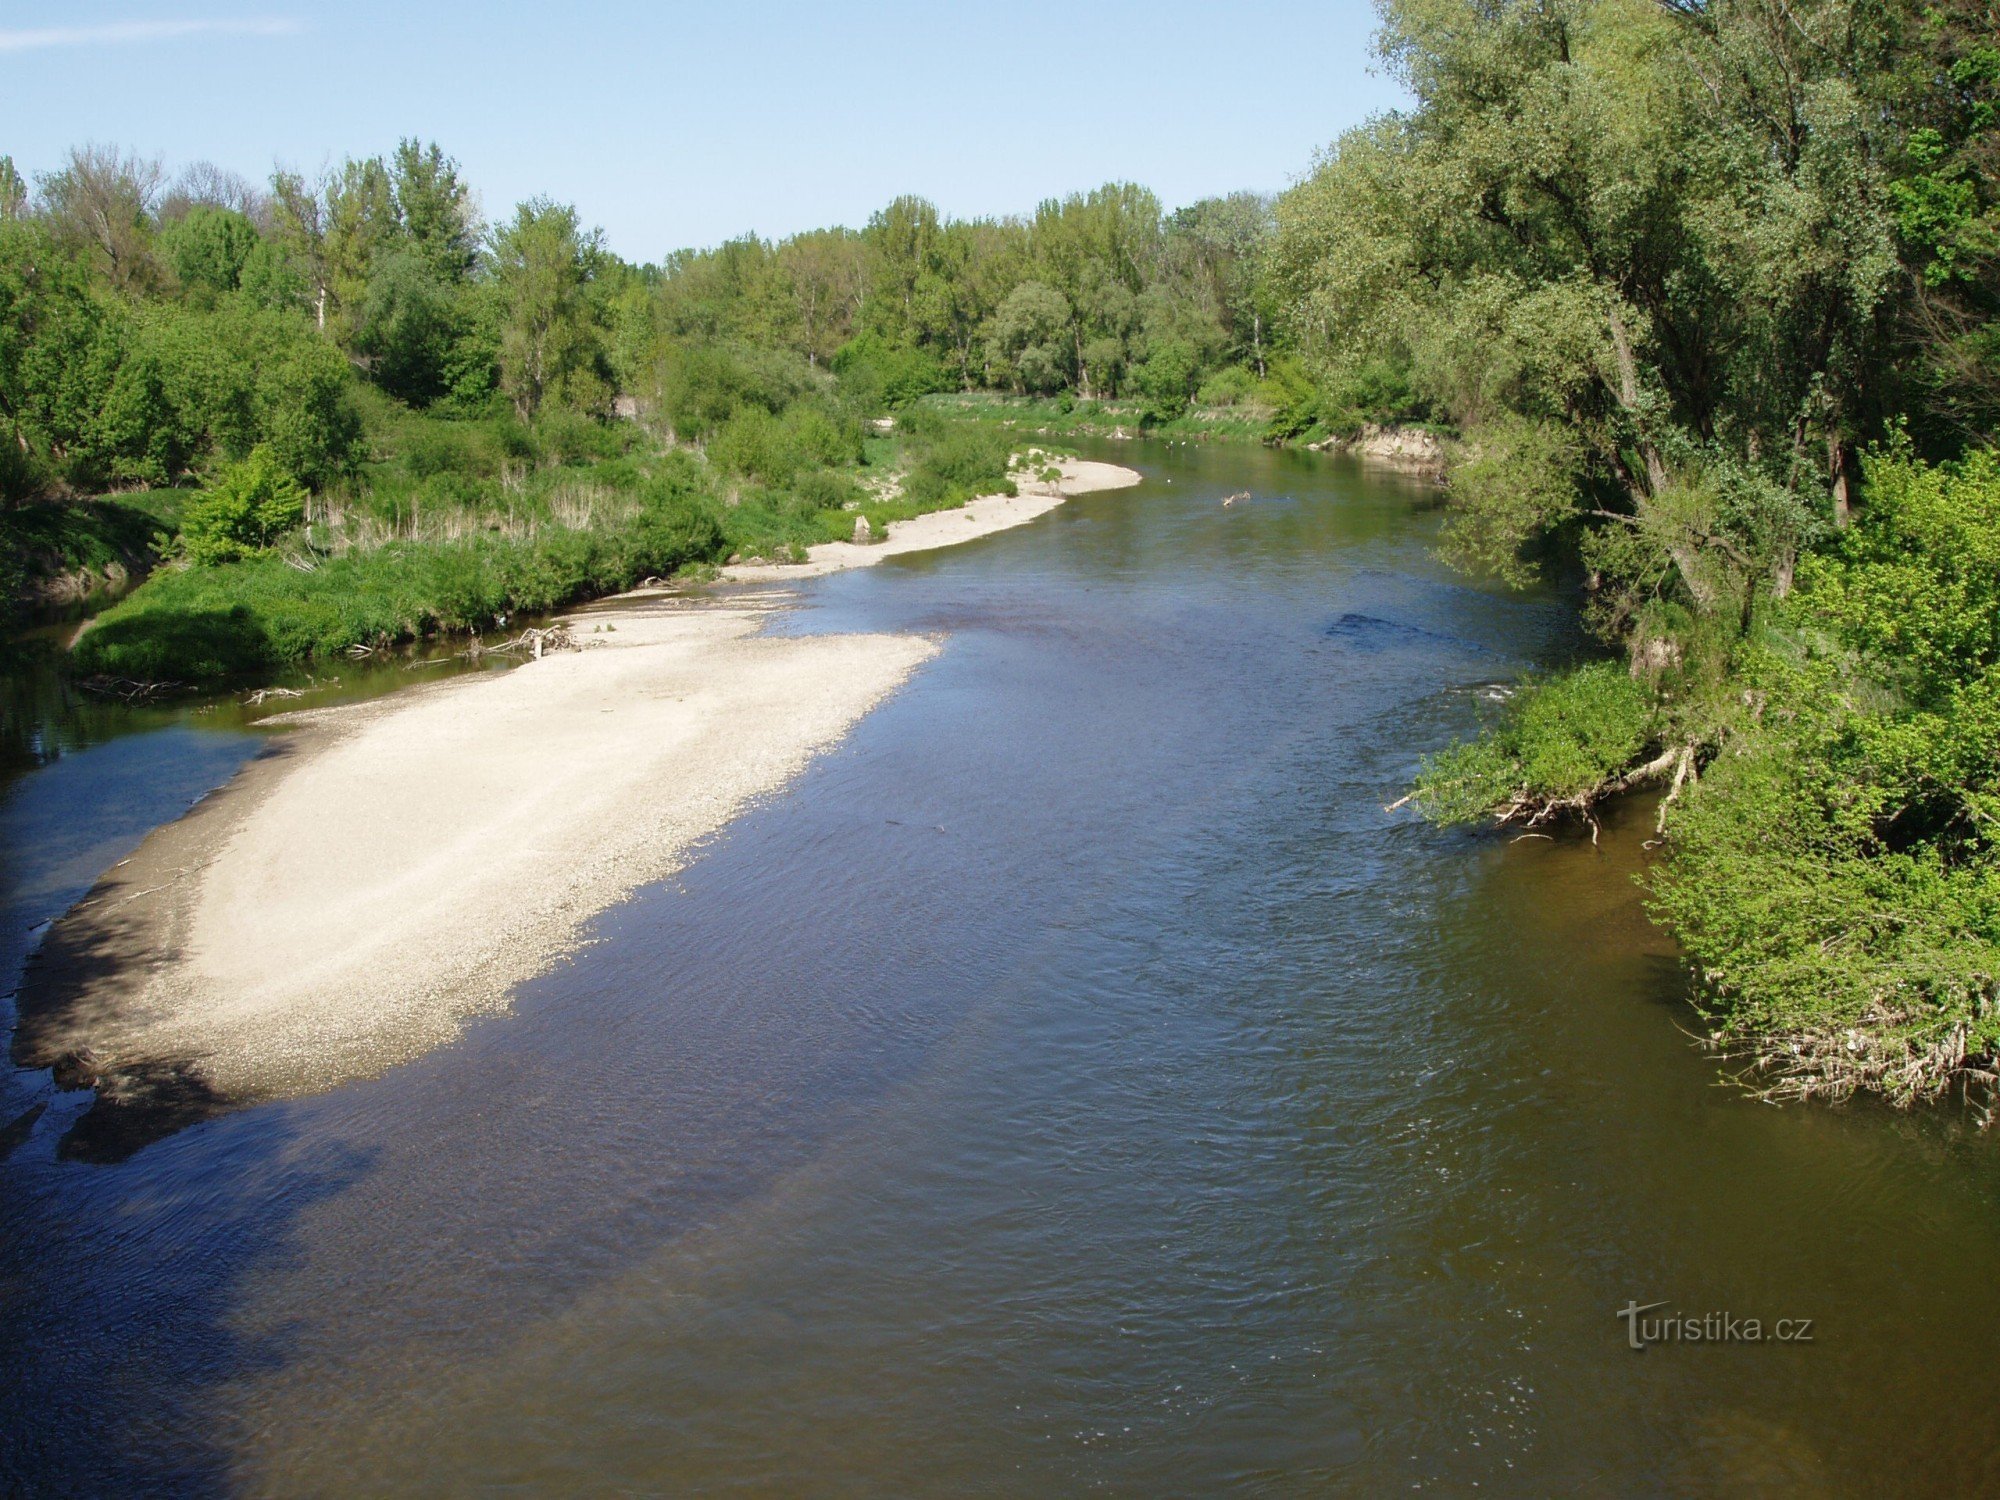 O rio Morava desde a ponte Lobodice